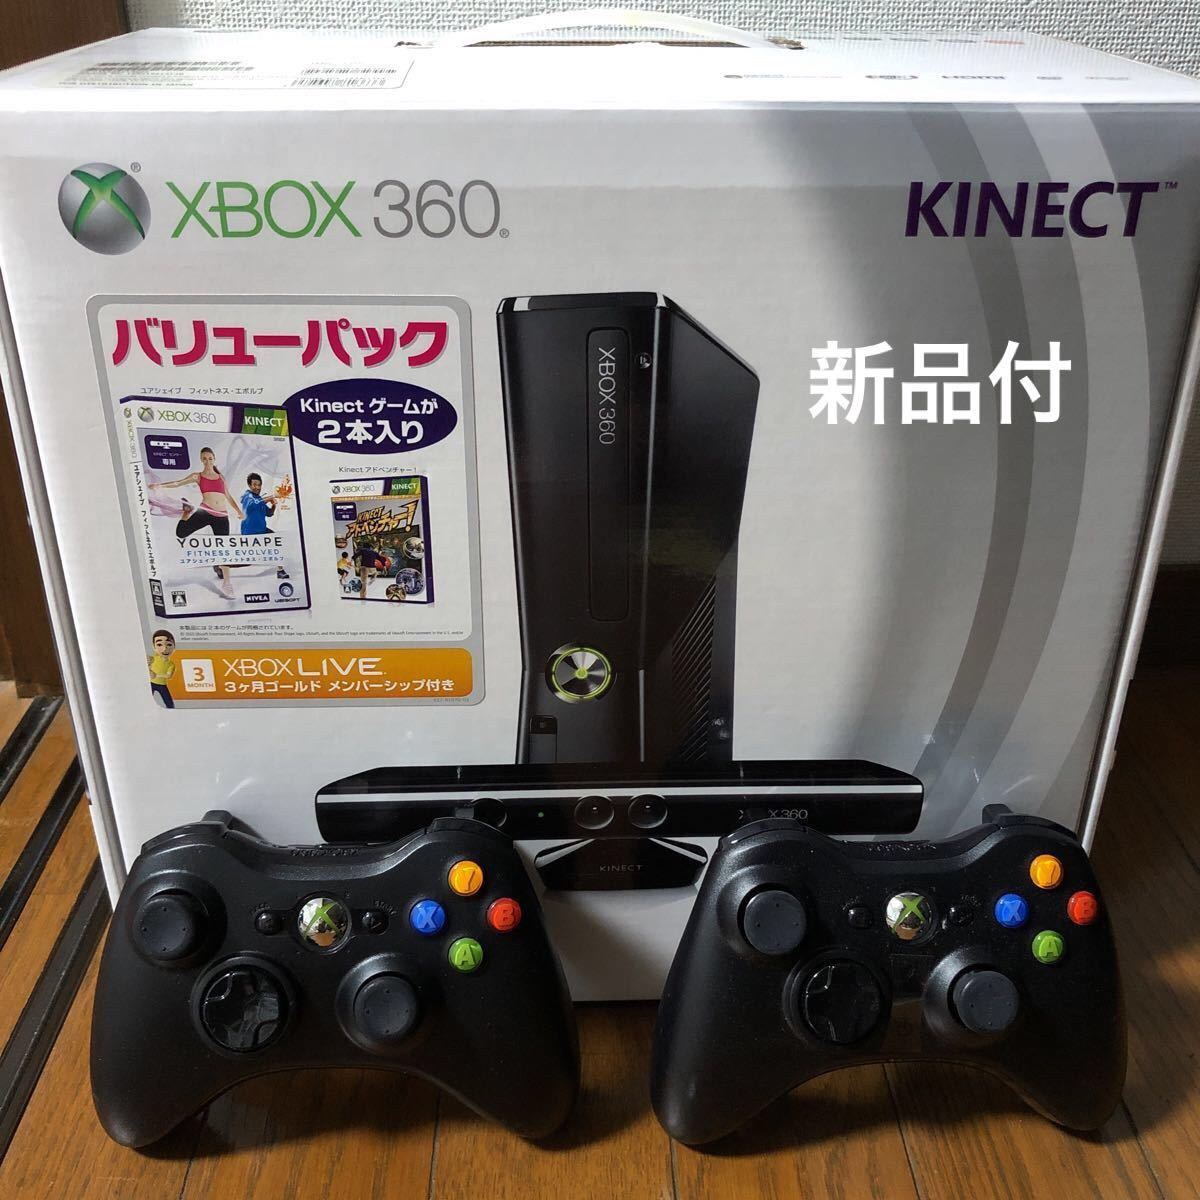 人気特価 XBOX360 Kinect ソフト新品付 本体 250GB ブラック - 本体